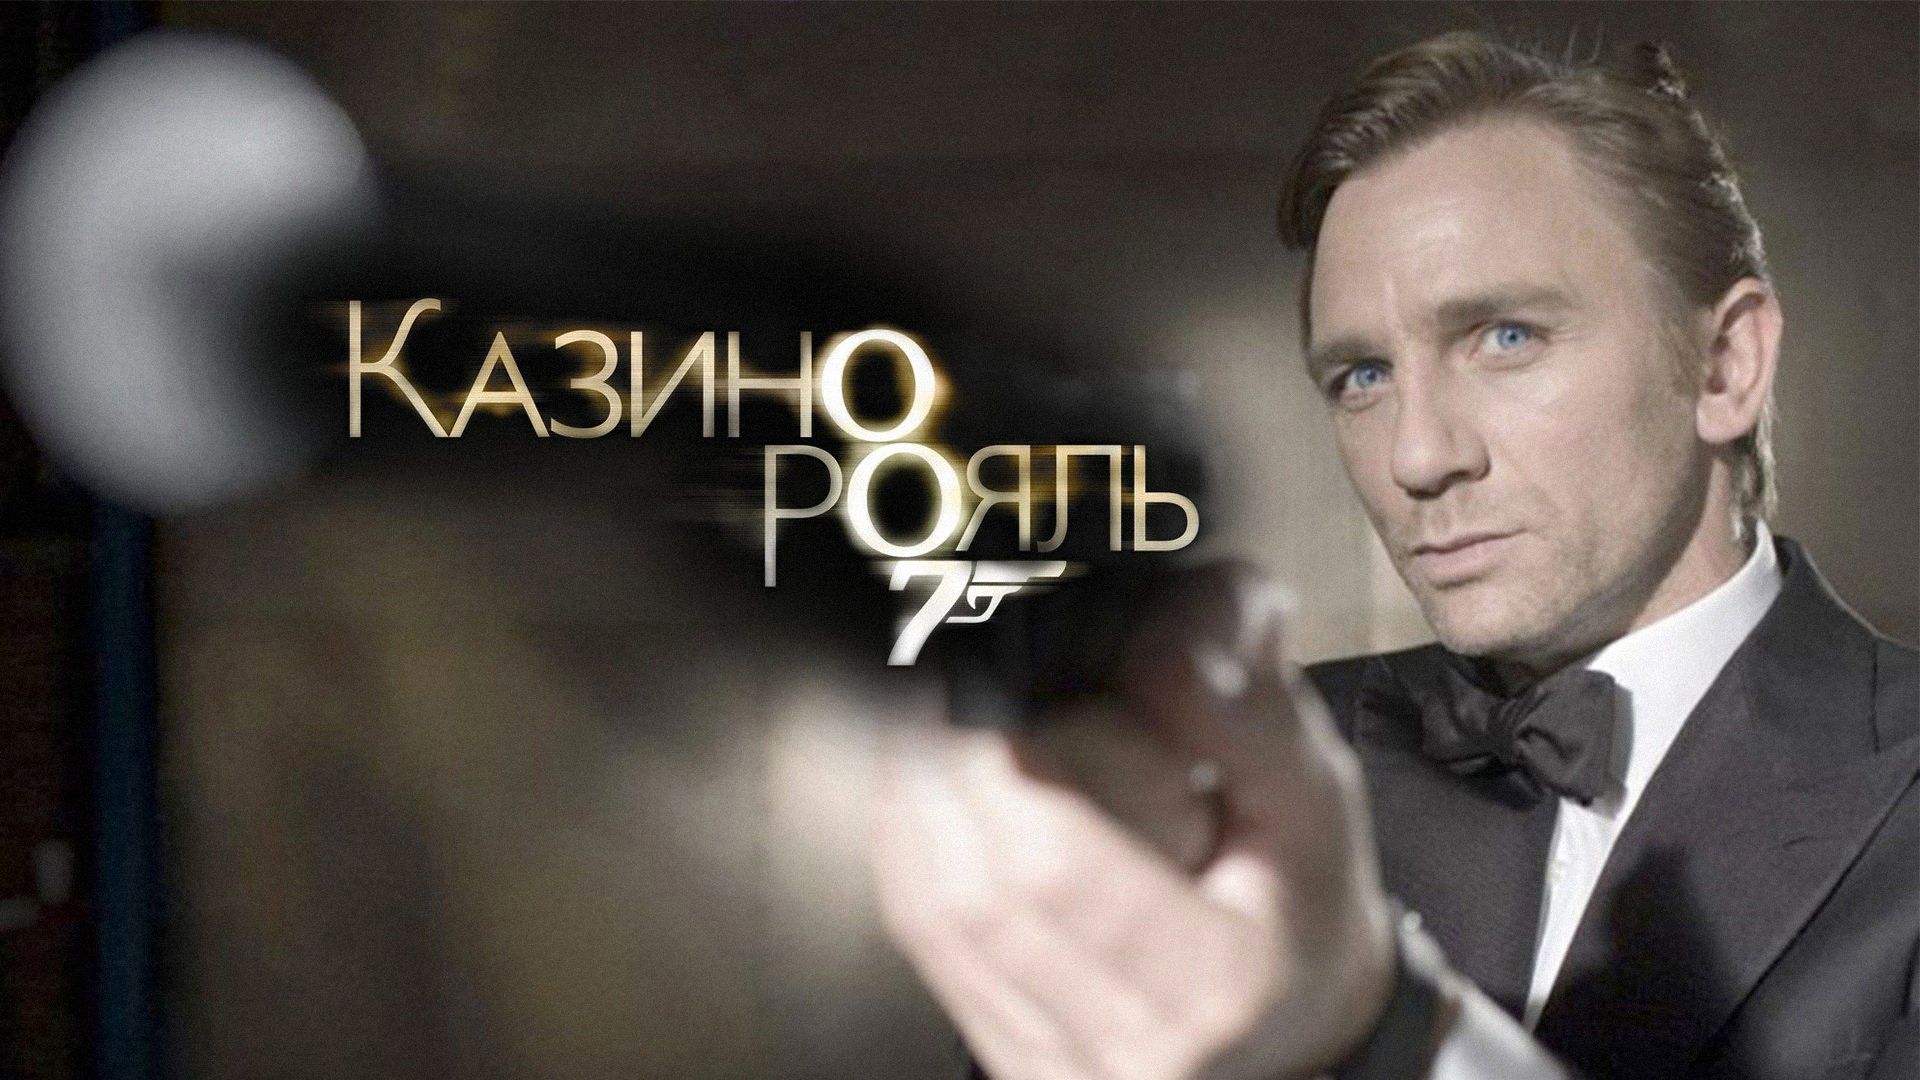 Бонд 007 казино рояль онлайн сражения на карте играть